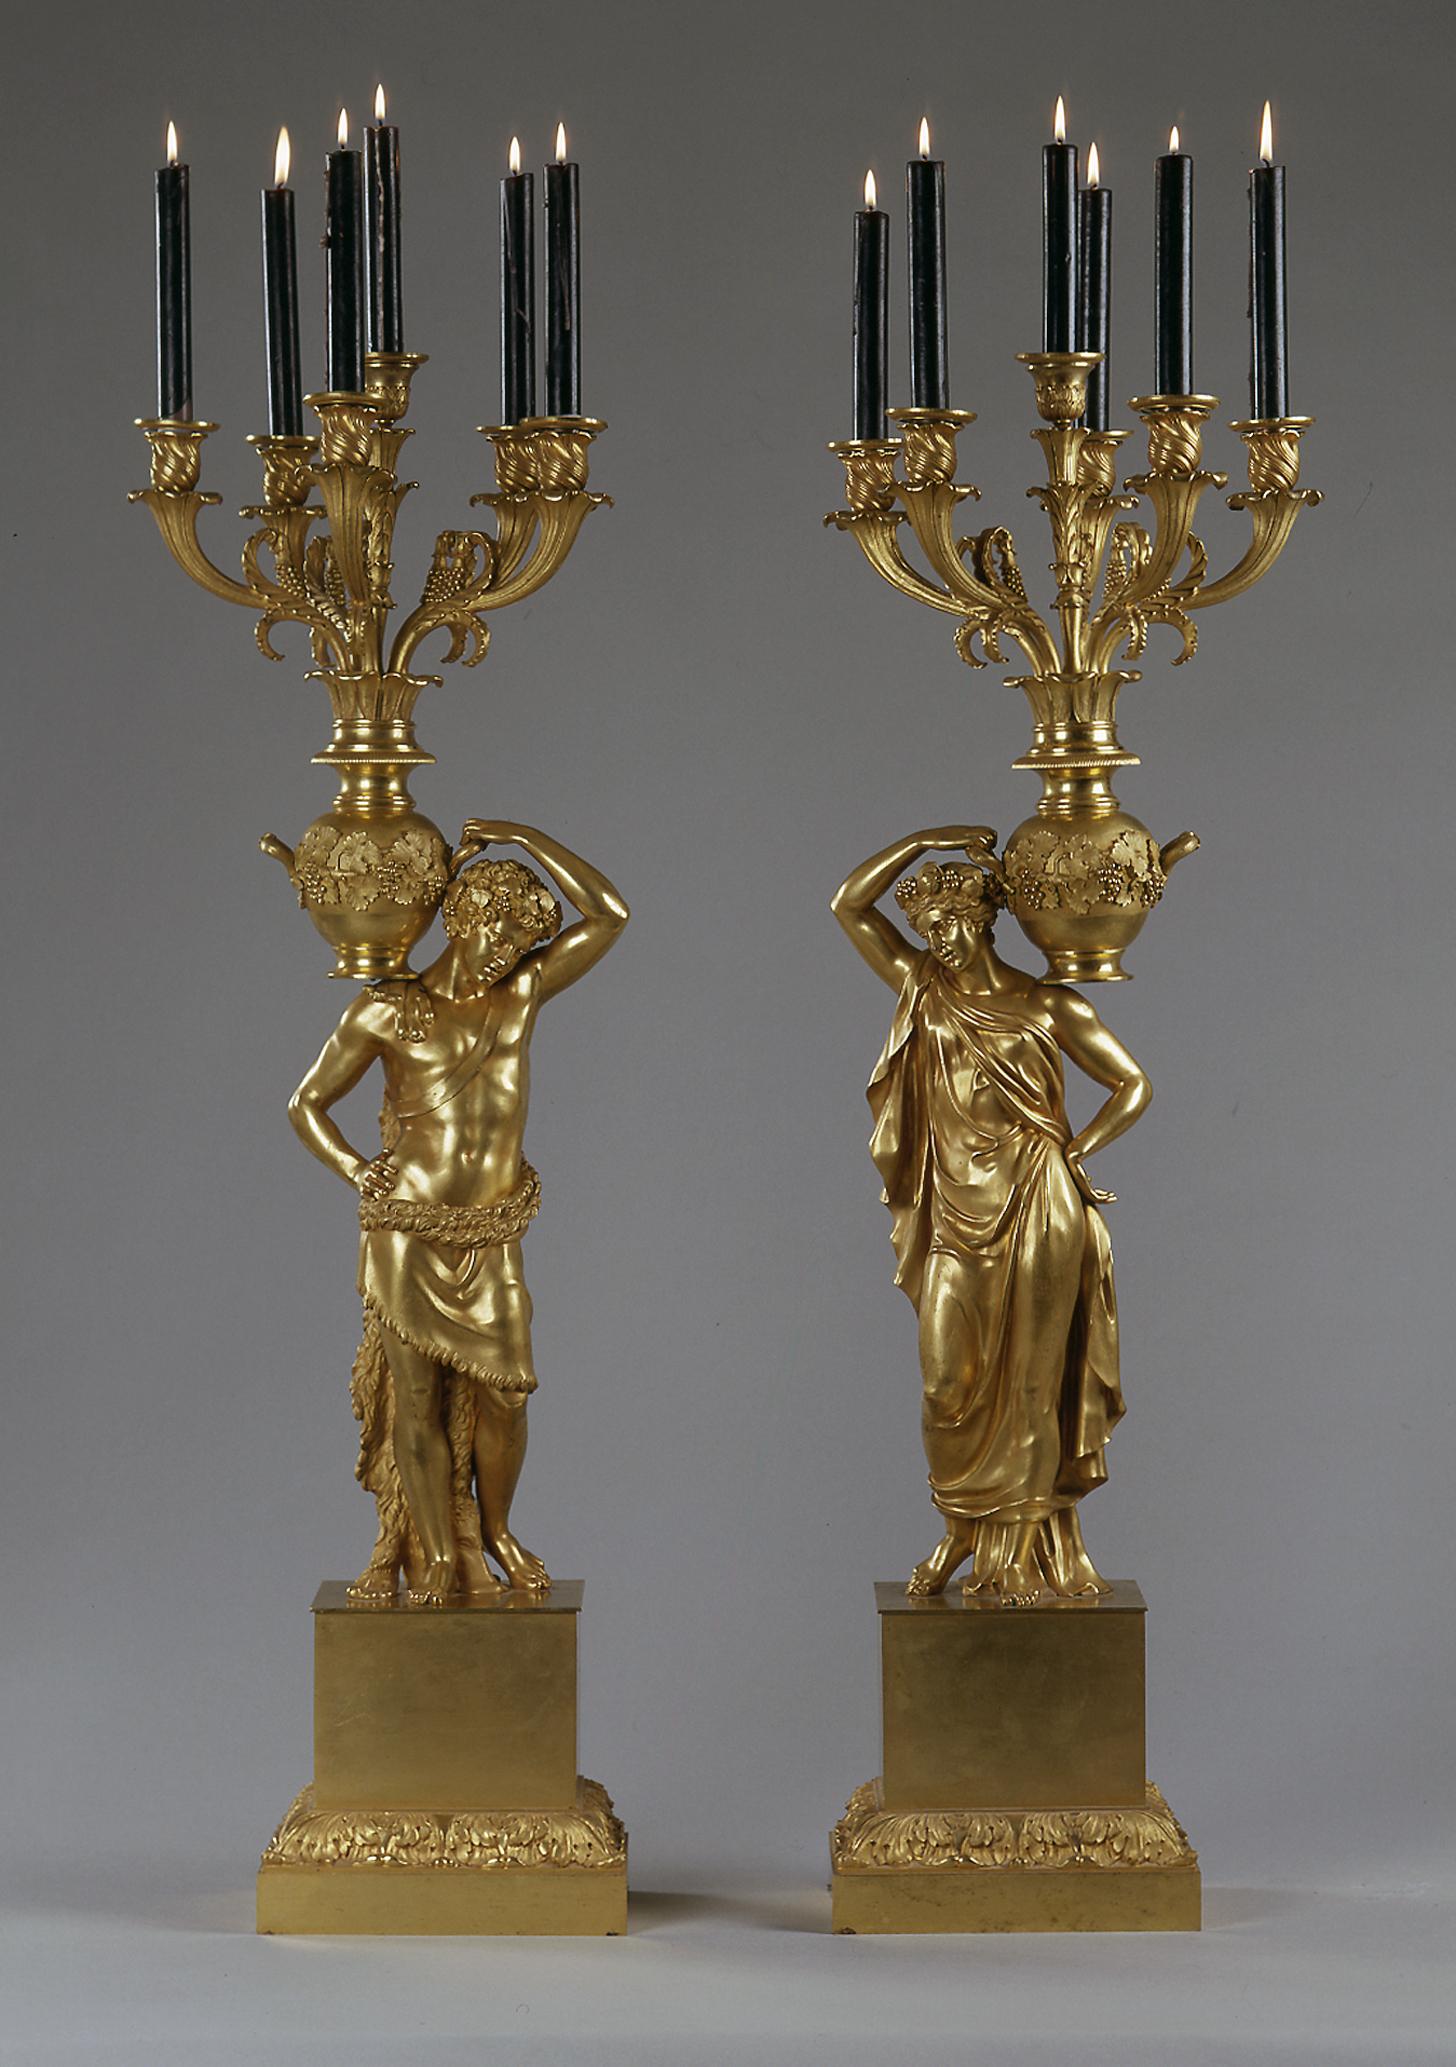 Ein prächtiges und sehr bedeutendes Paar vergoldeter Bronzekandelaber mit Figuren aus der Kaiserzeit.

Frankreich, um 1815.

Ein prächtiges und sehr bedeutendes Paar vergoldeter Bronzekandelaber mit Figuren aus der Kaiserzeit. Die Kandelaber